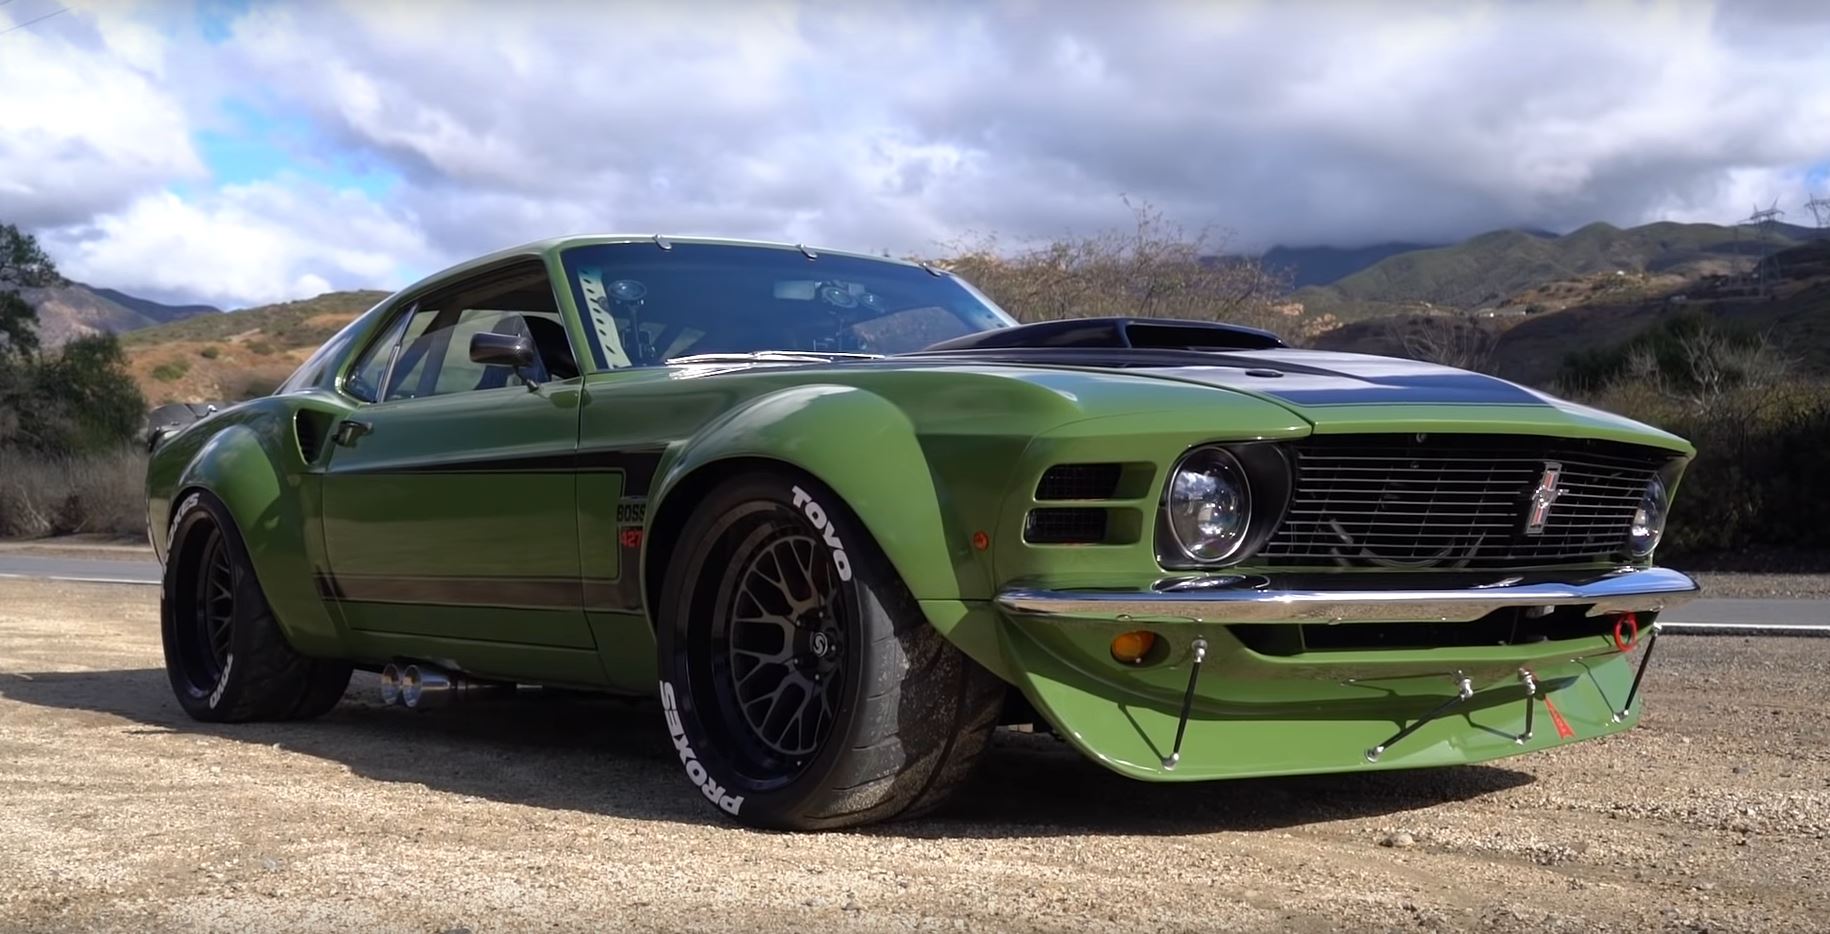 Widebody 1970 Mustang "Ruffian" Looks Killer in Green, Has Side E...